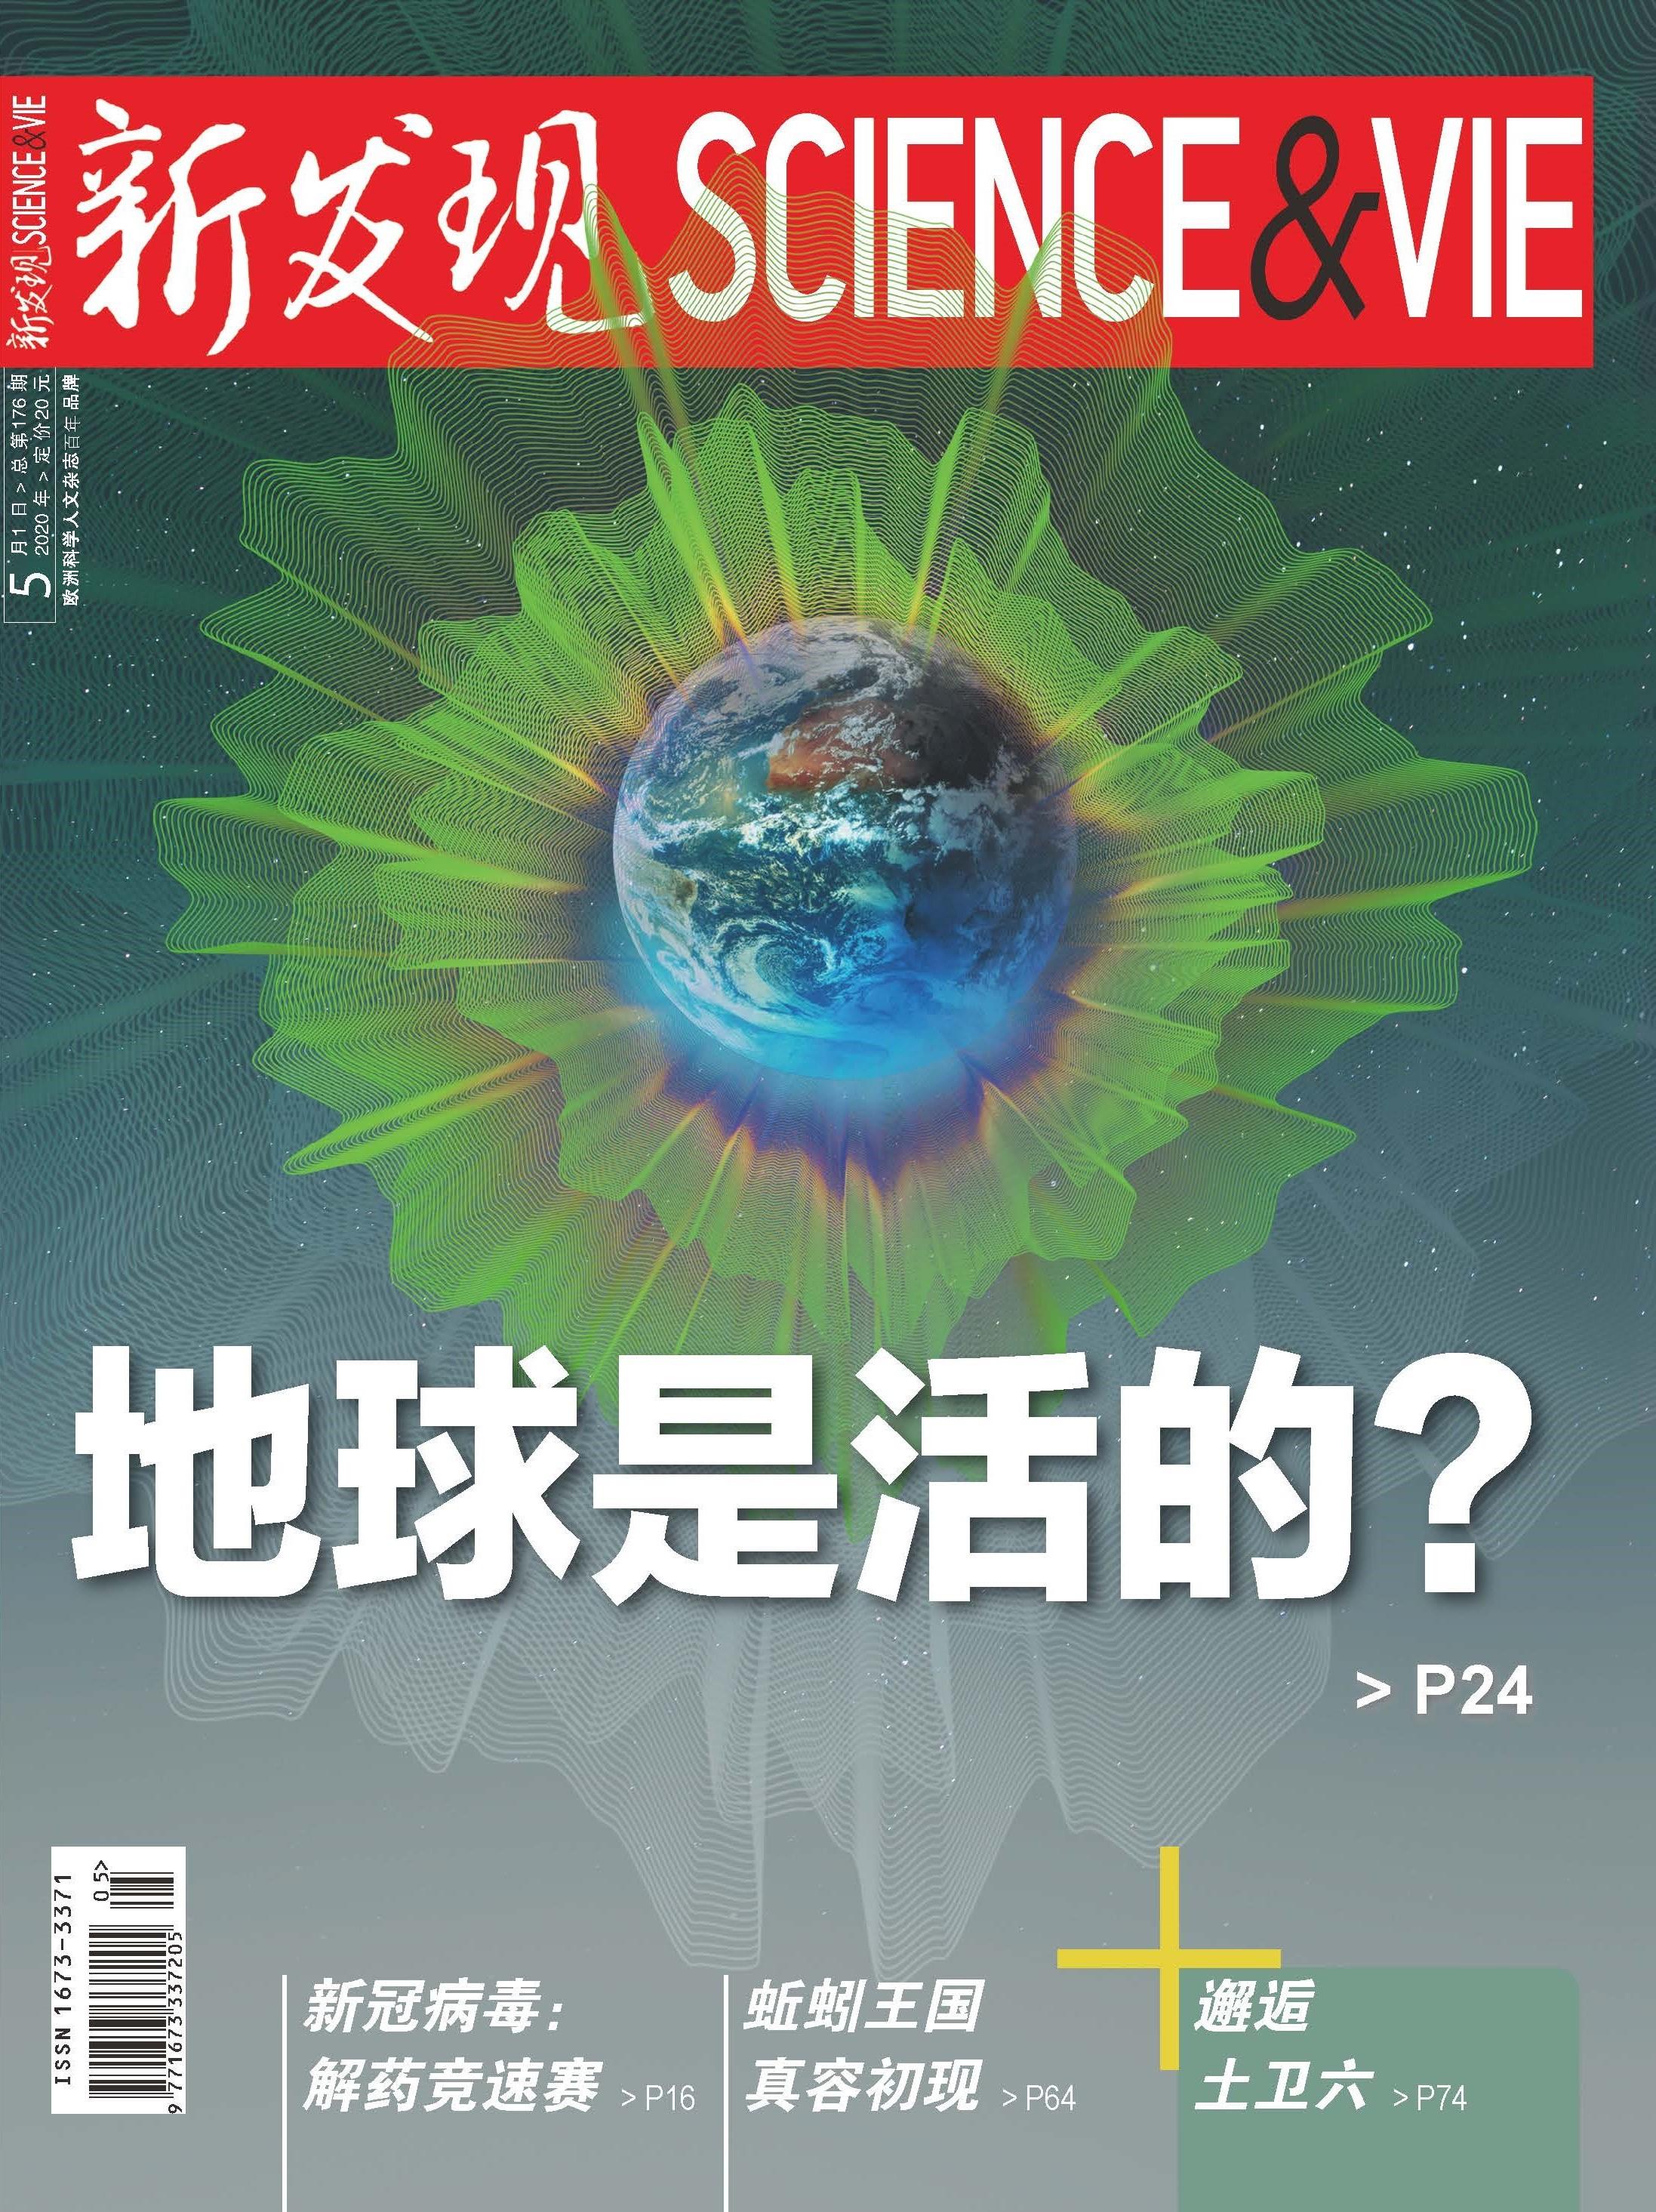 《新发现》五月刊:地球是活的?